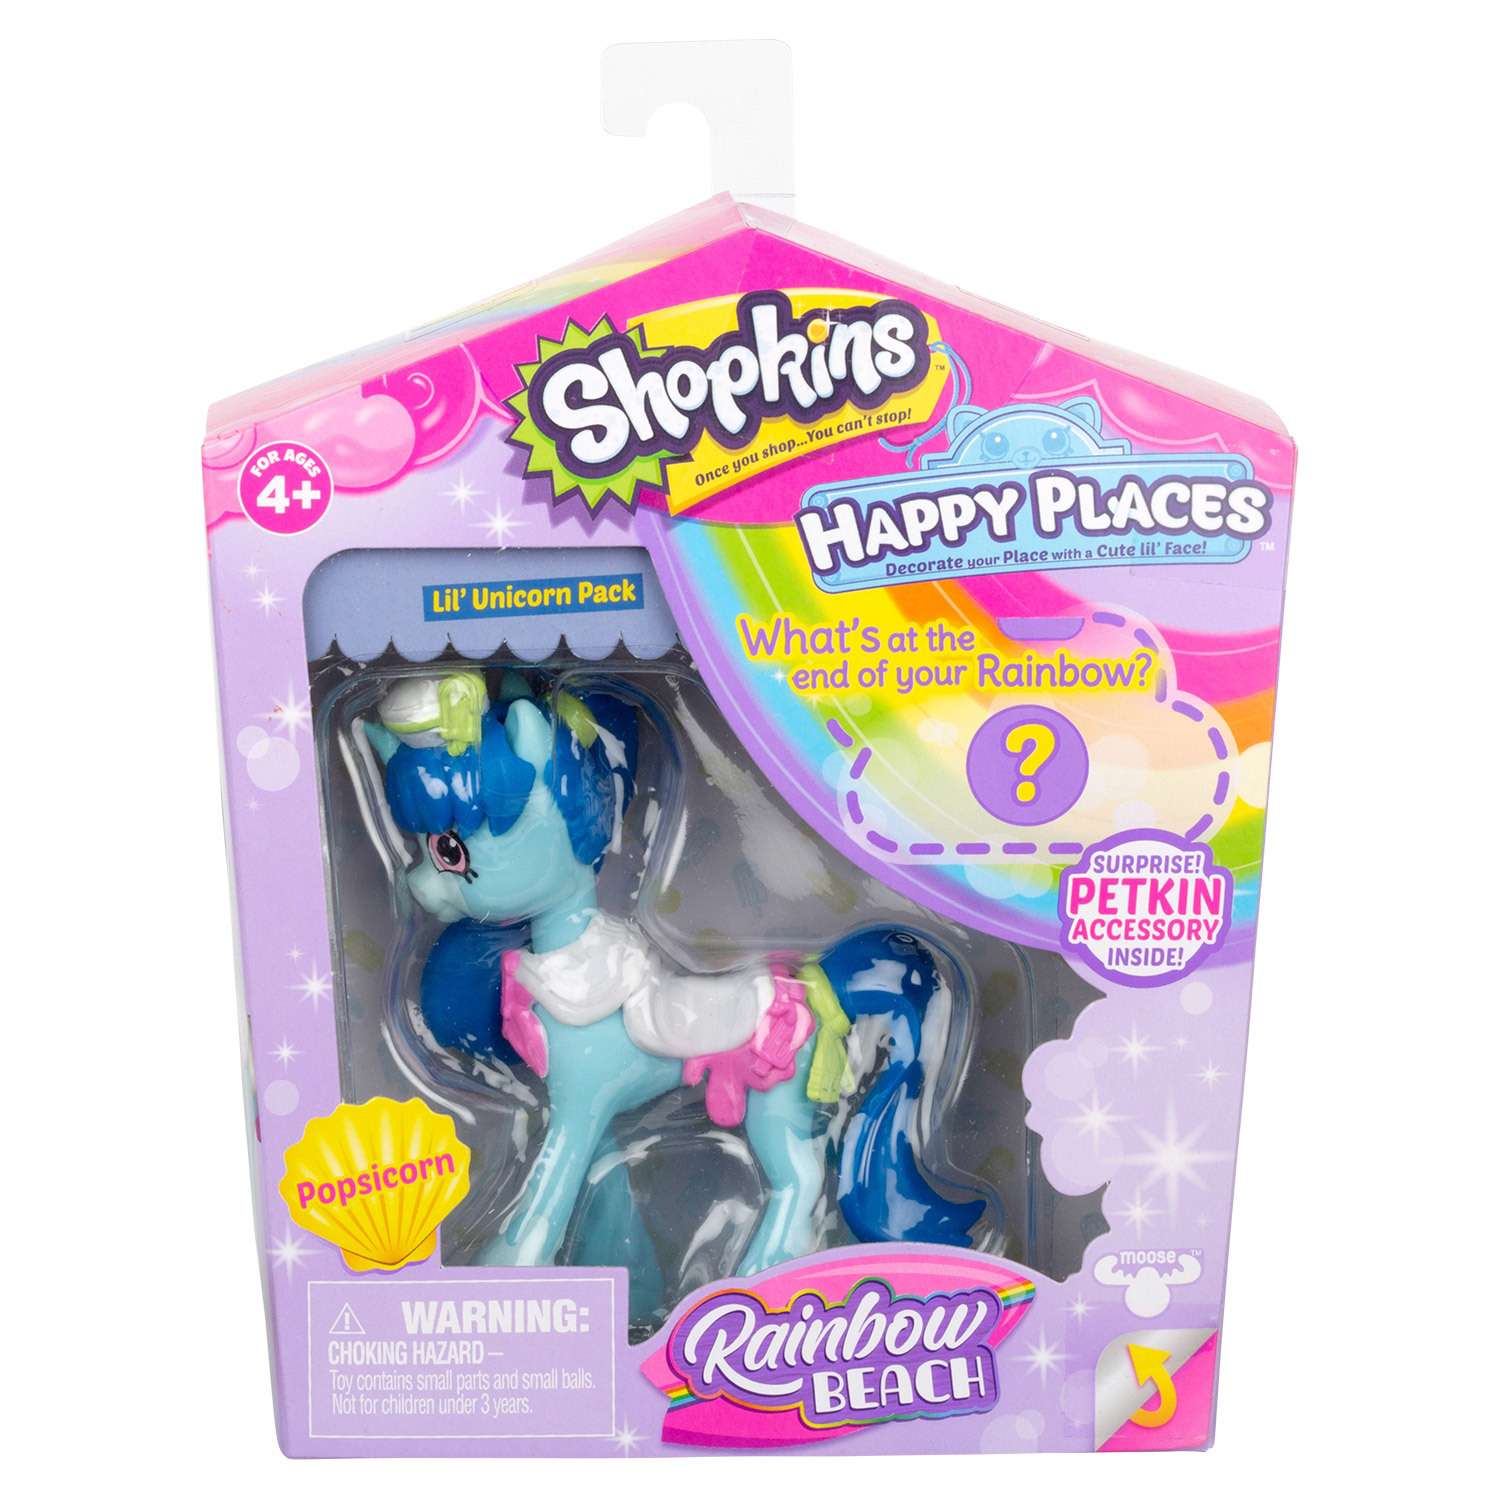 Игрушка Happy Places Shopkins с пони Попсикорн 56843 в непрозрачной упаковке (Сюрприз) - фото 2